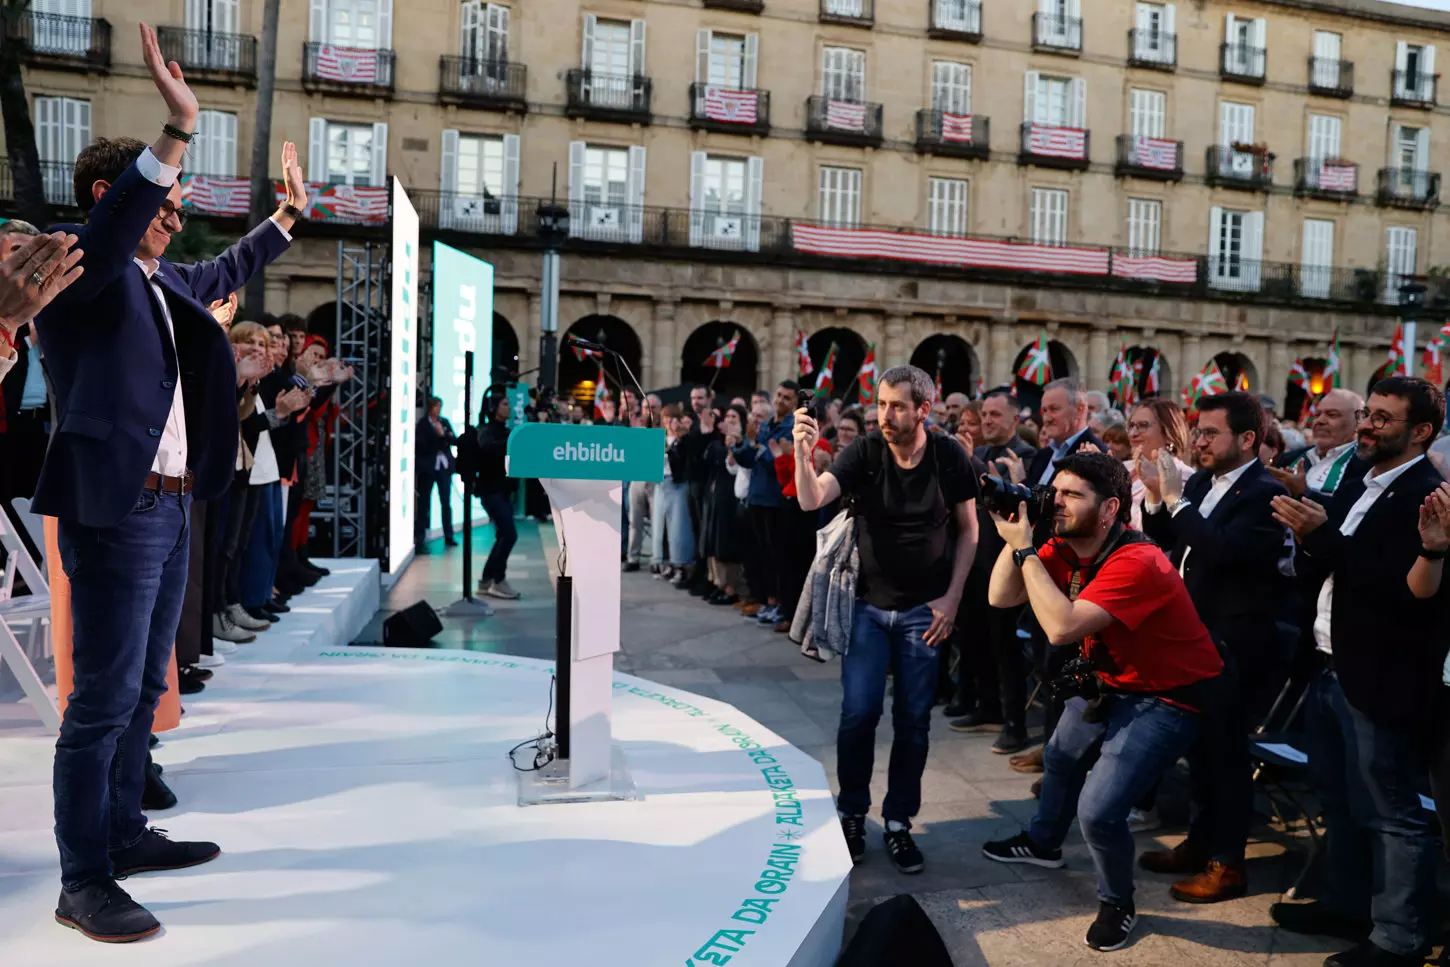 El candidato de EH Bildu Pello Otxandiano saluda tras el acto electoral de cierre de campaña celebrado este viernes en Bilbao. — Luis Tejido / EFE